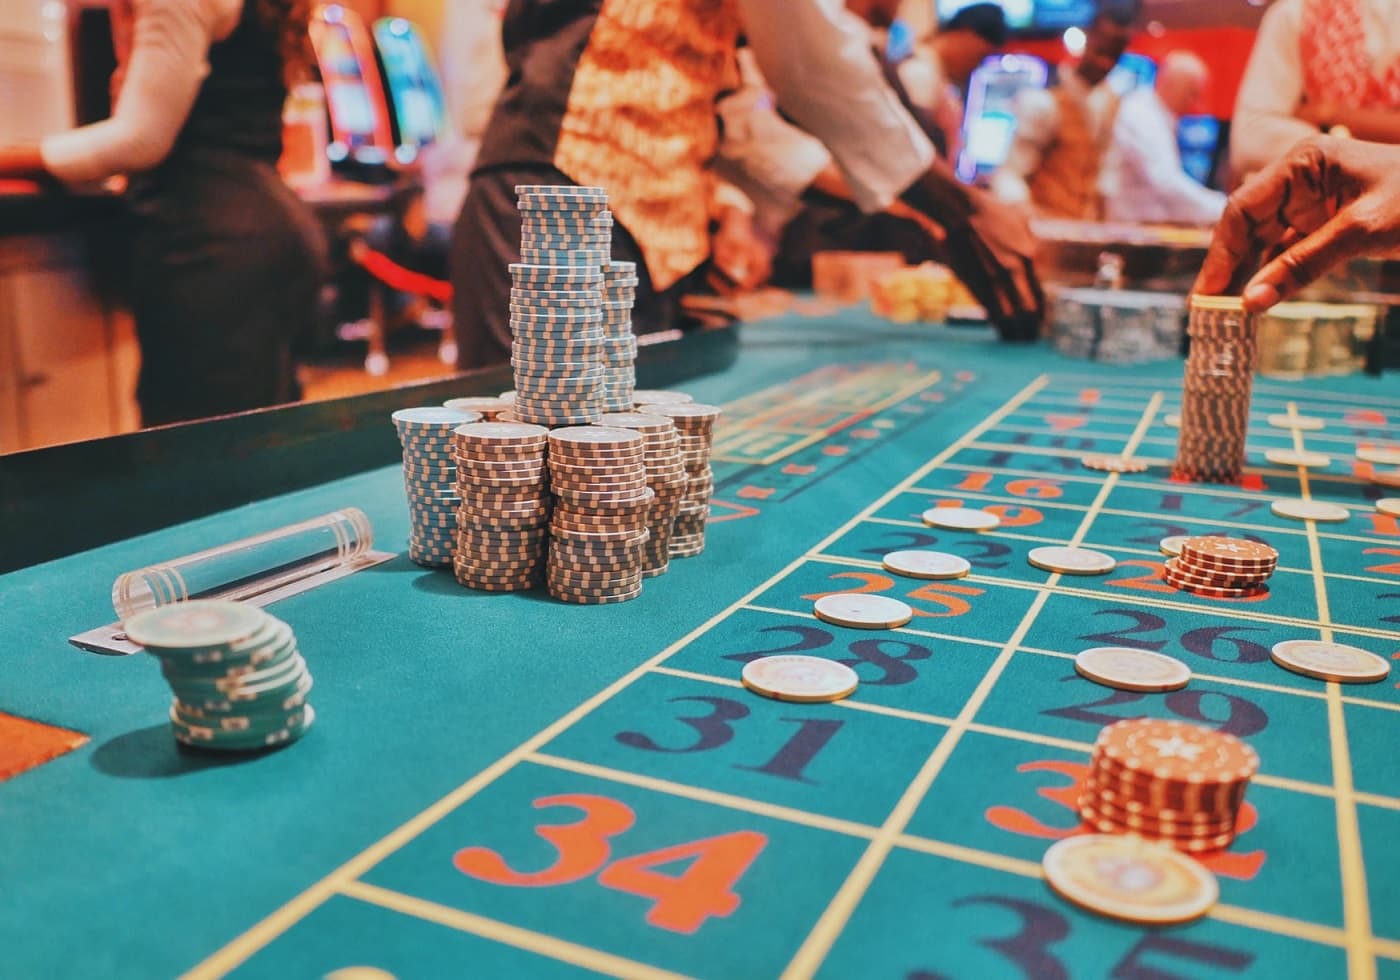 Juegos de casino online sin mucho dinero: 4 opciones perfectas